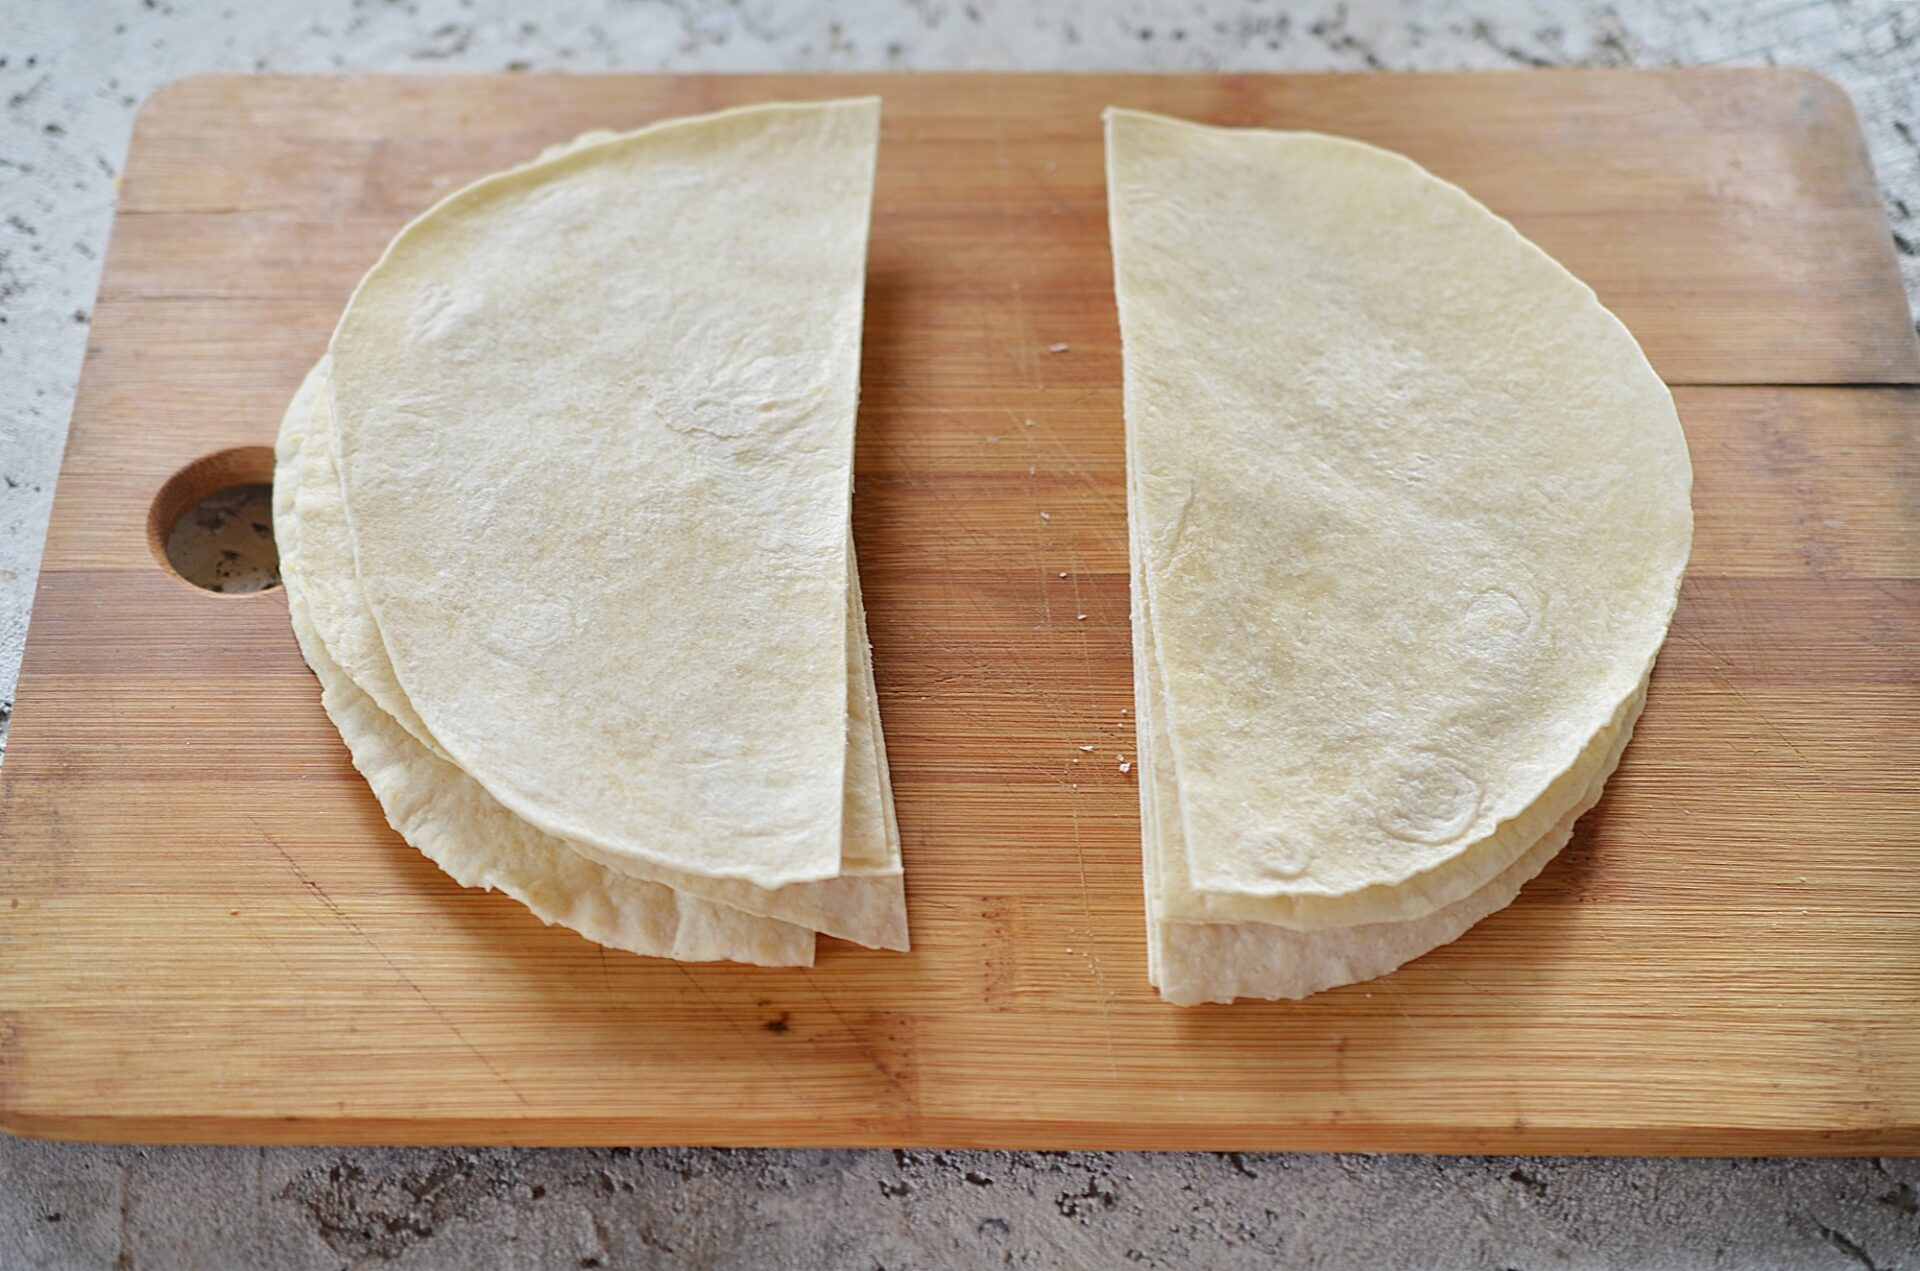 Tortillas cut in half on a cutting board.